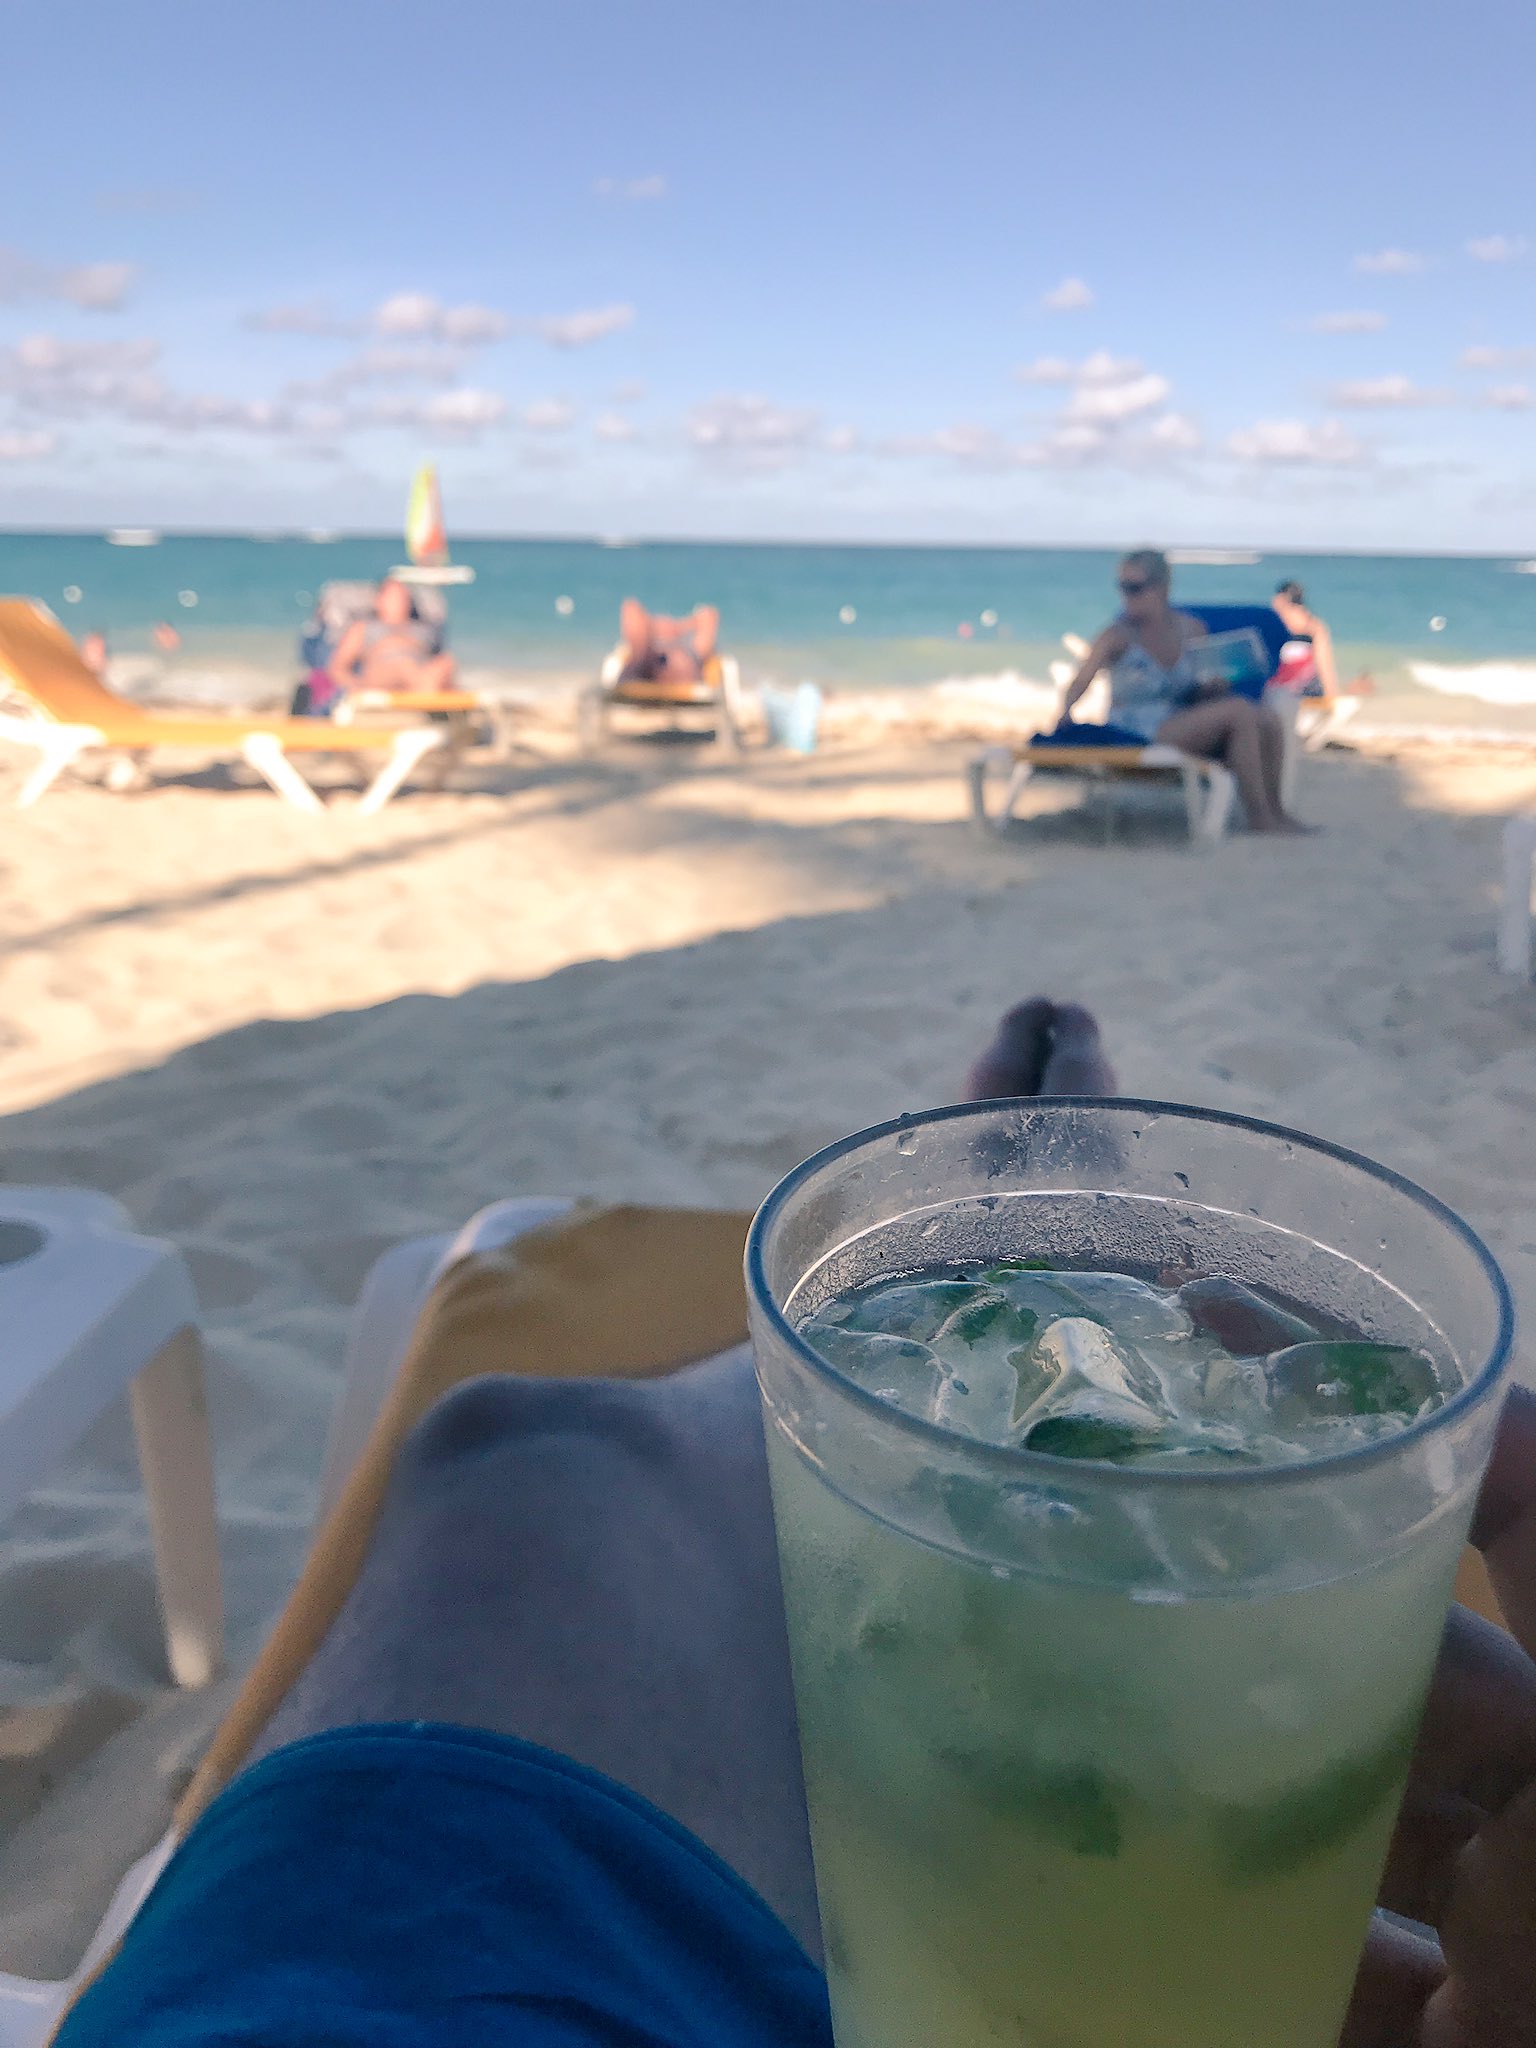 Lucas Melgarejo on Twitter: "Necesito a Punta era tan hermoso estar despreocupado en la playa con un trago en la mano... https://t.co/PCN3VpWhSZ" / Twitter